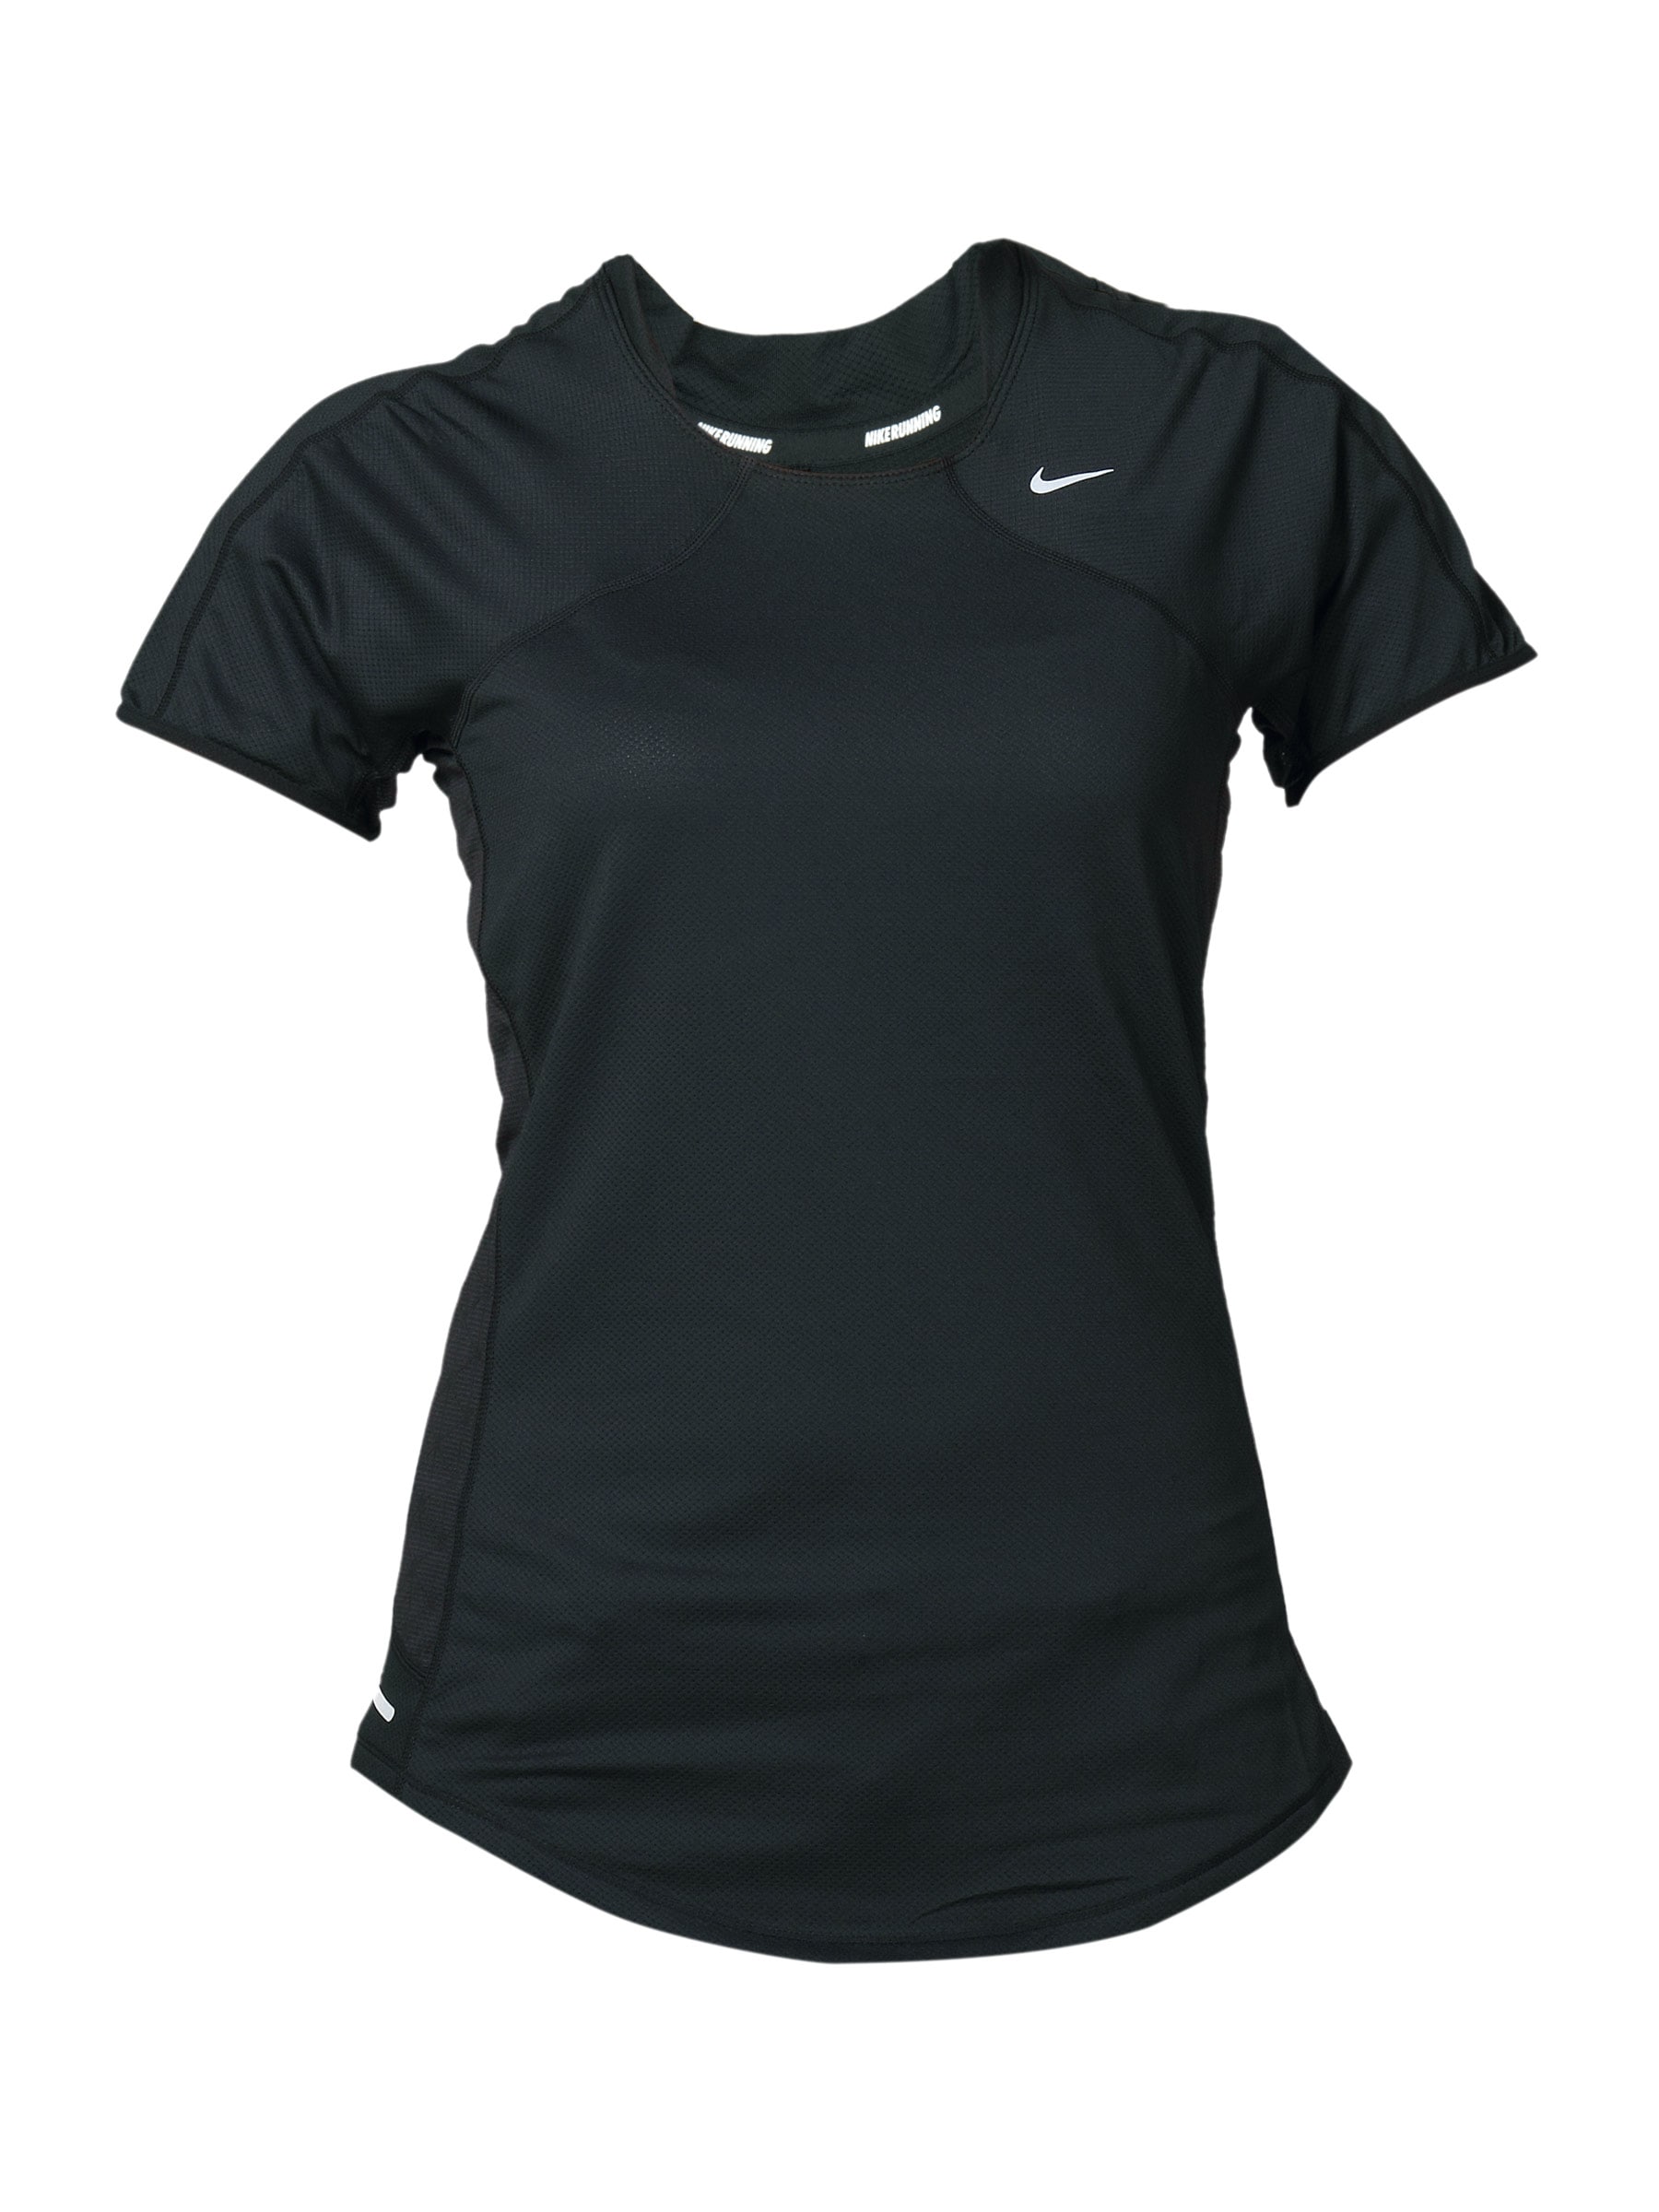 Nike Women's Spher Black T-shirt